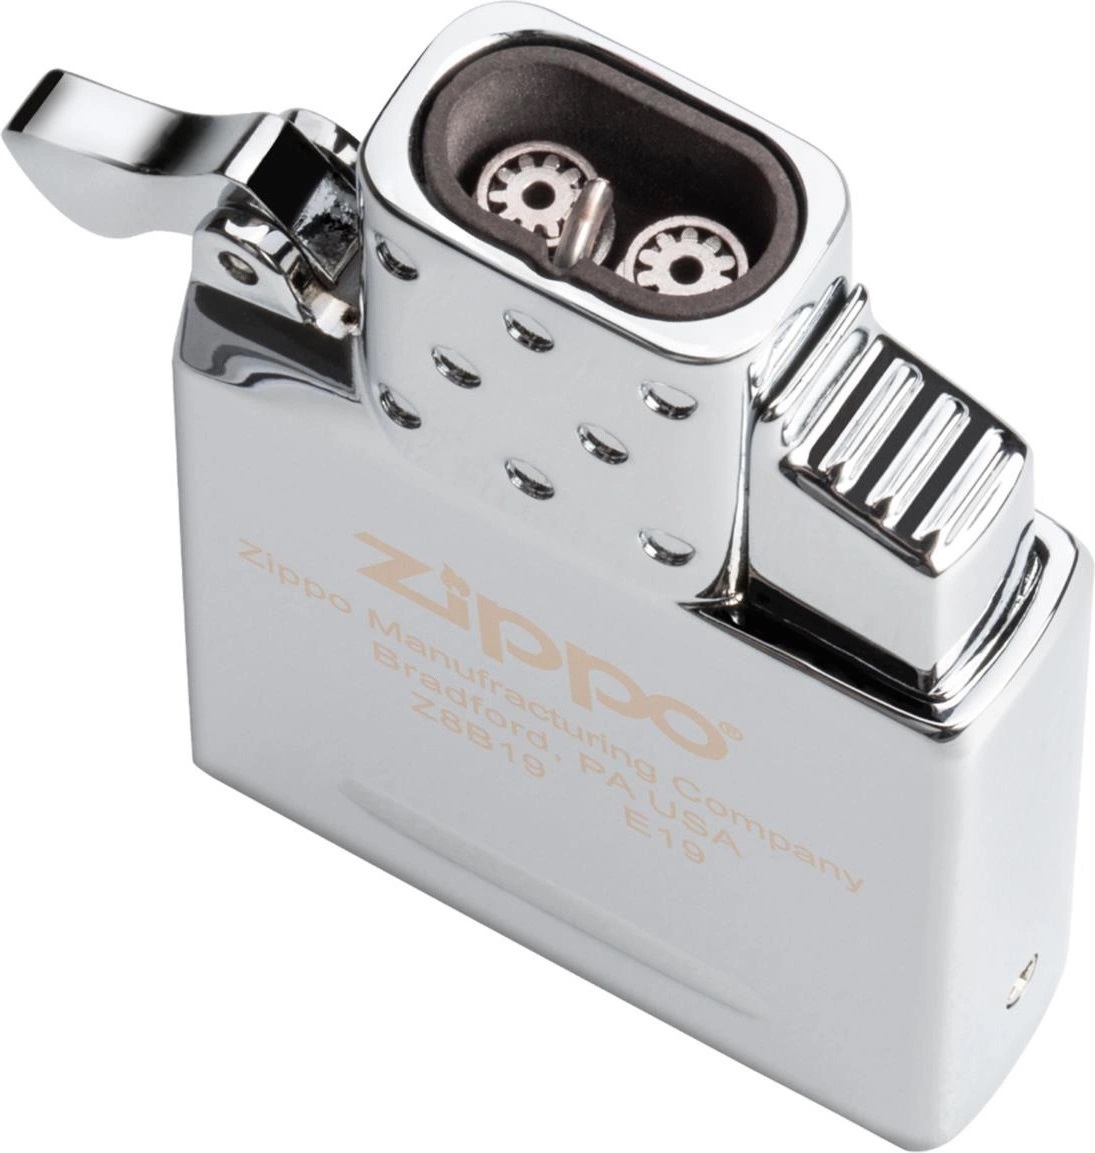 Turbo 2-plamen - vložka pro zapalovače Zippo